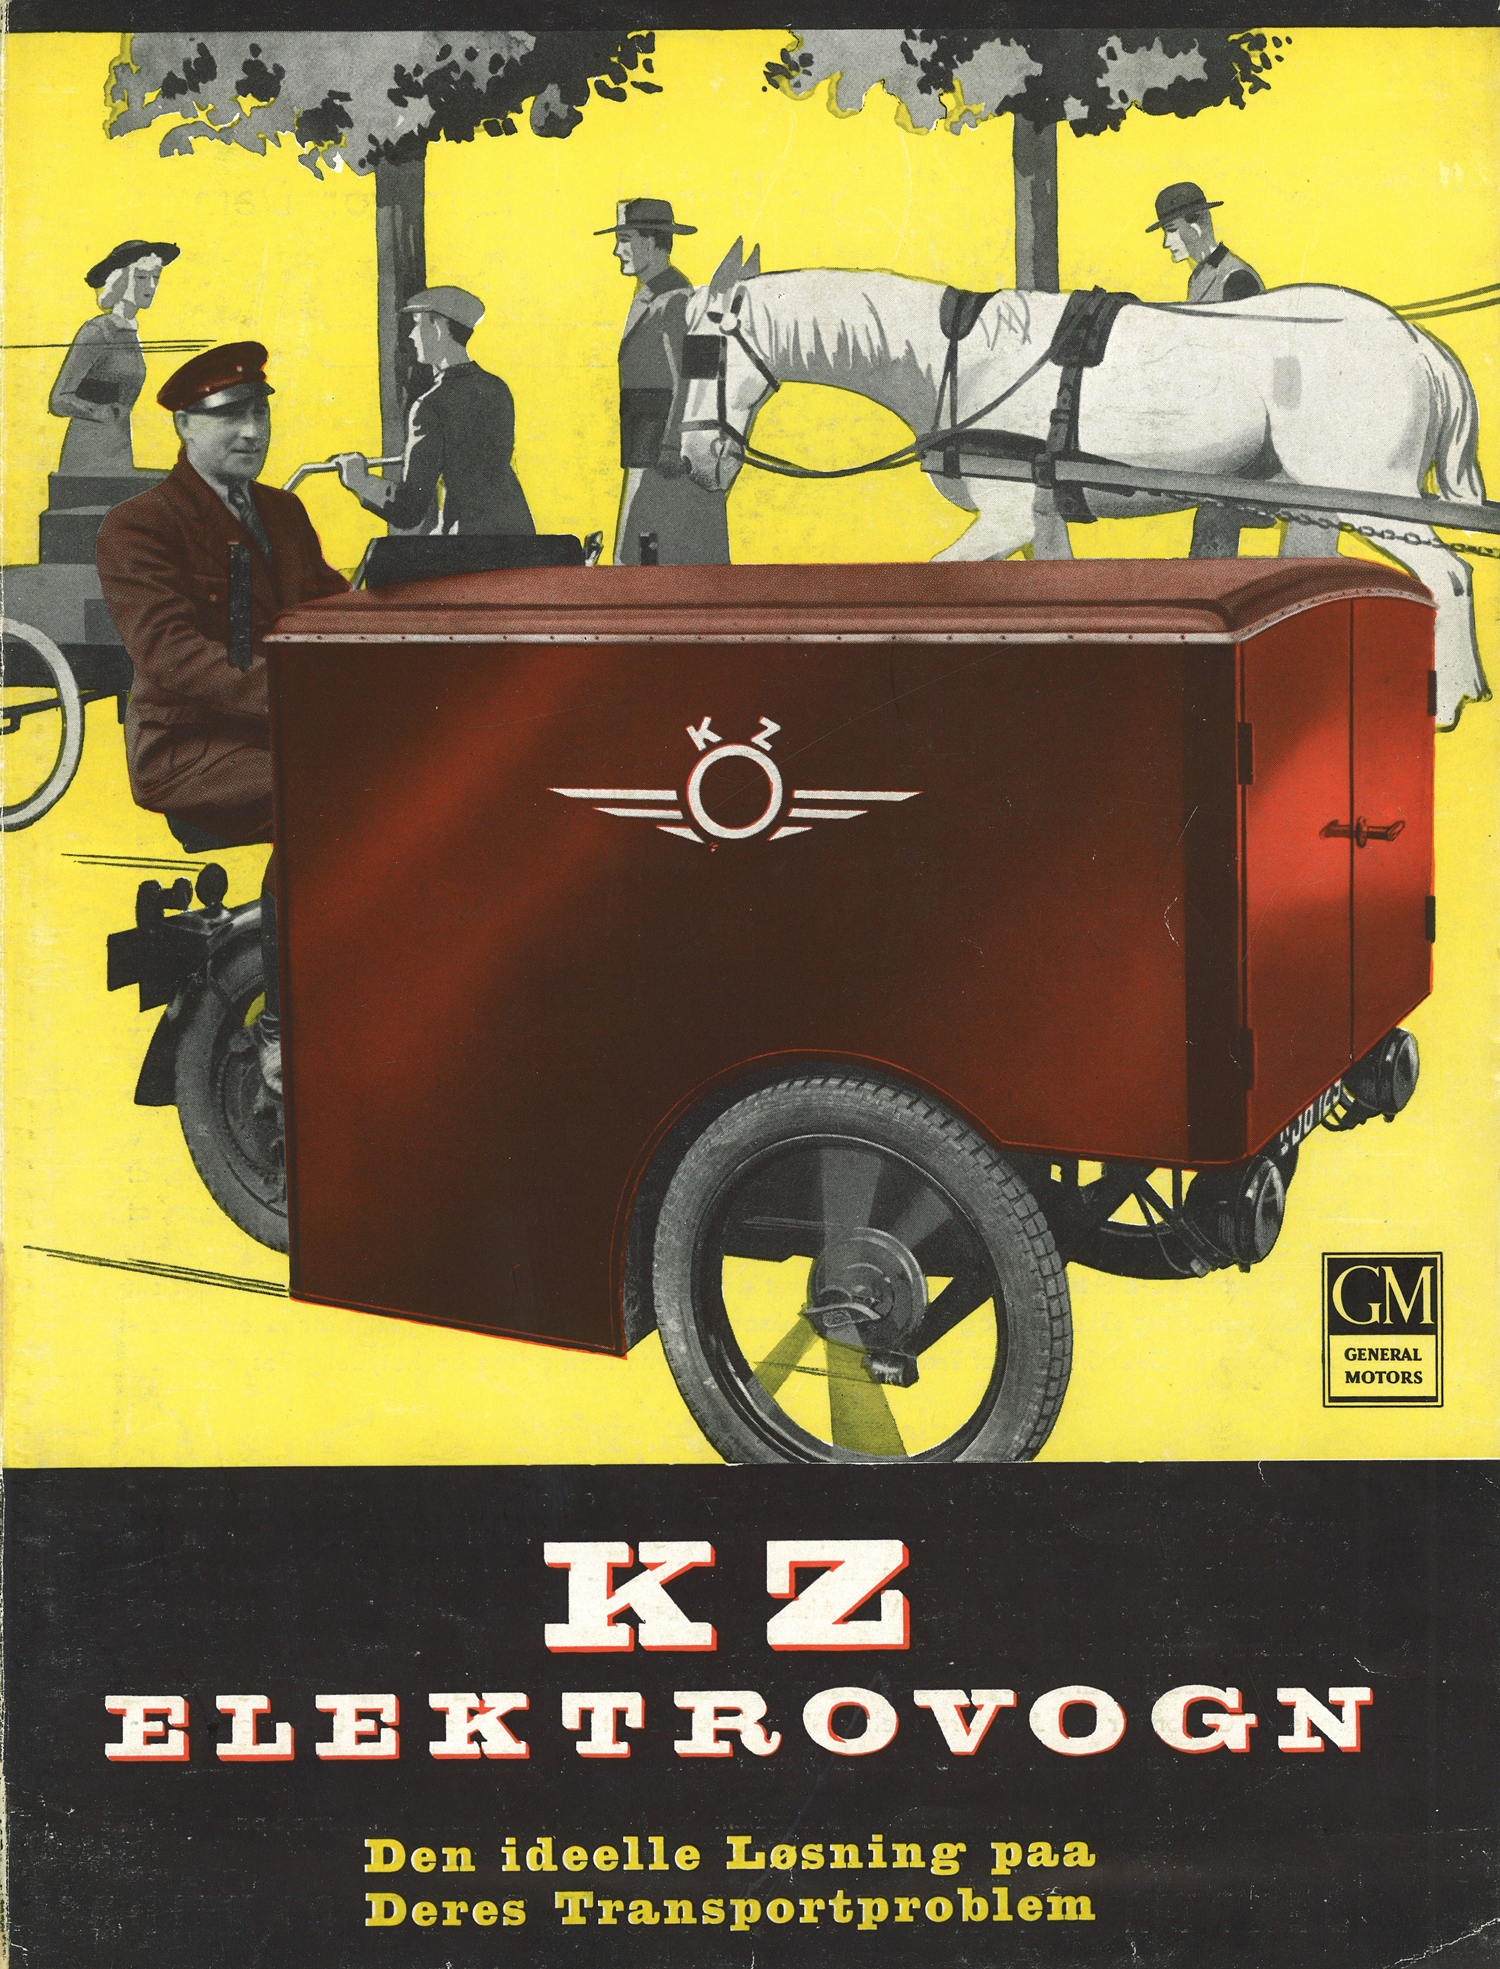 En gammel plakatreklame for KZ-elektrovogn, bygget af det danske firma KZ, som før krigen byggede fly.